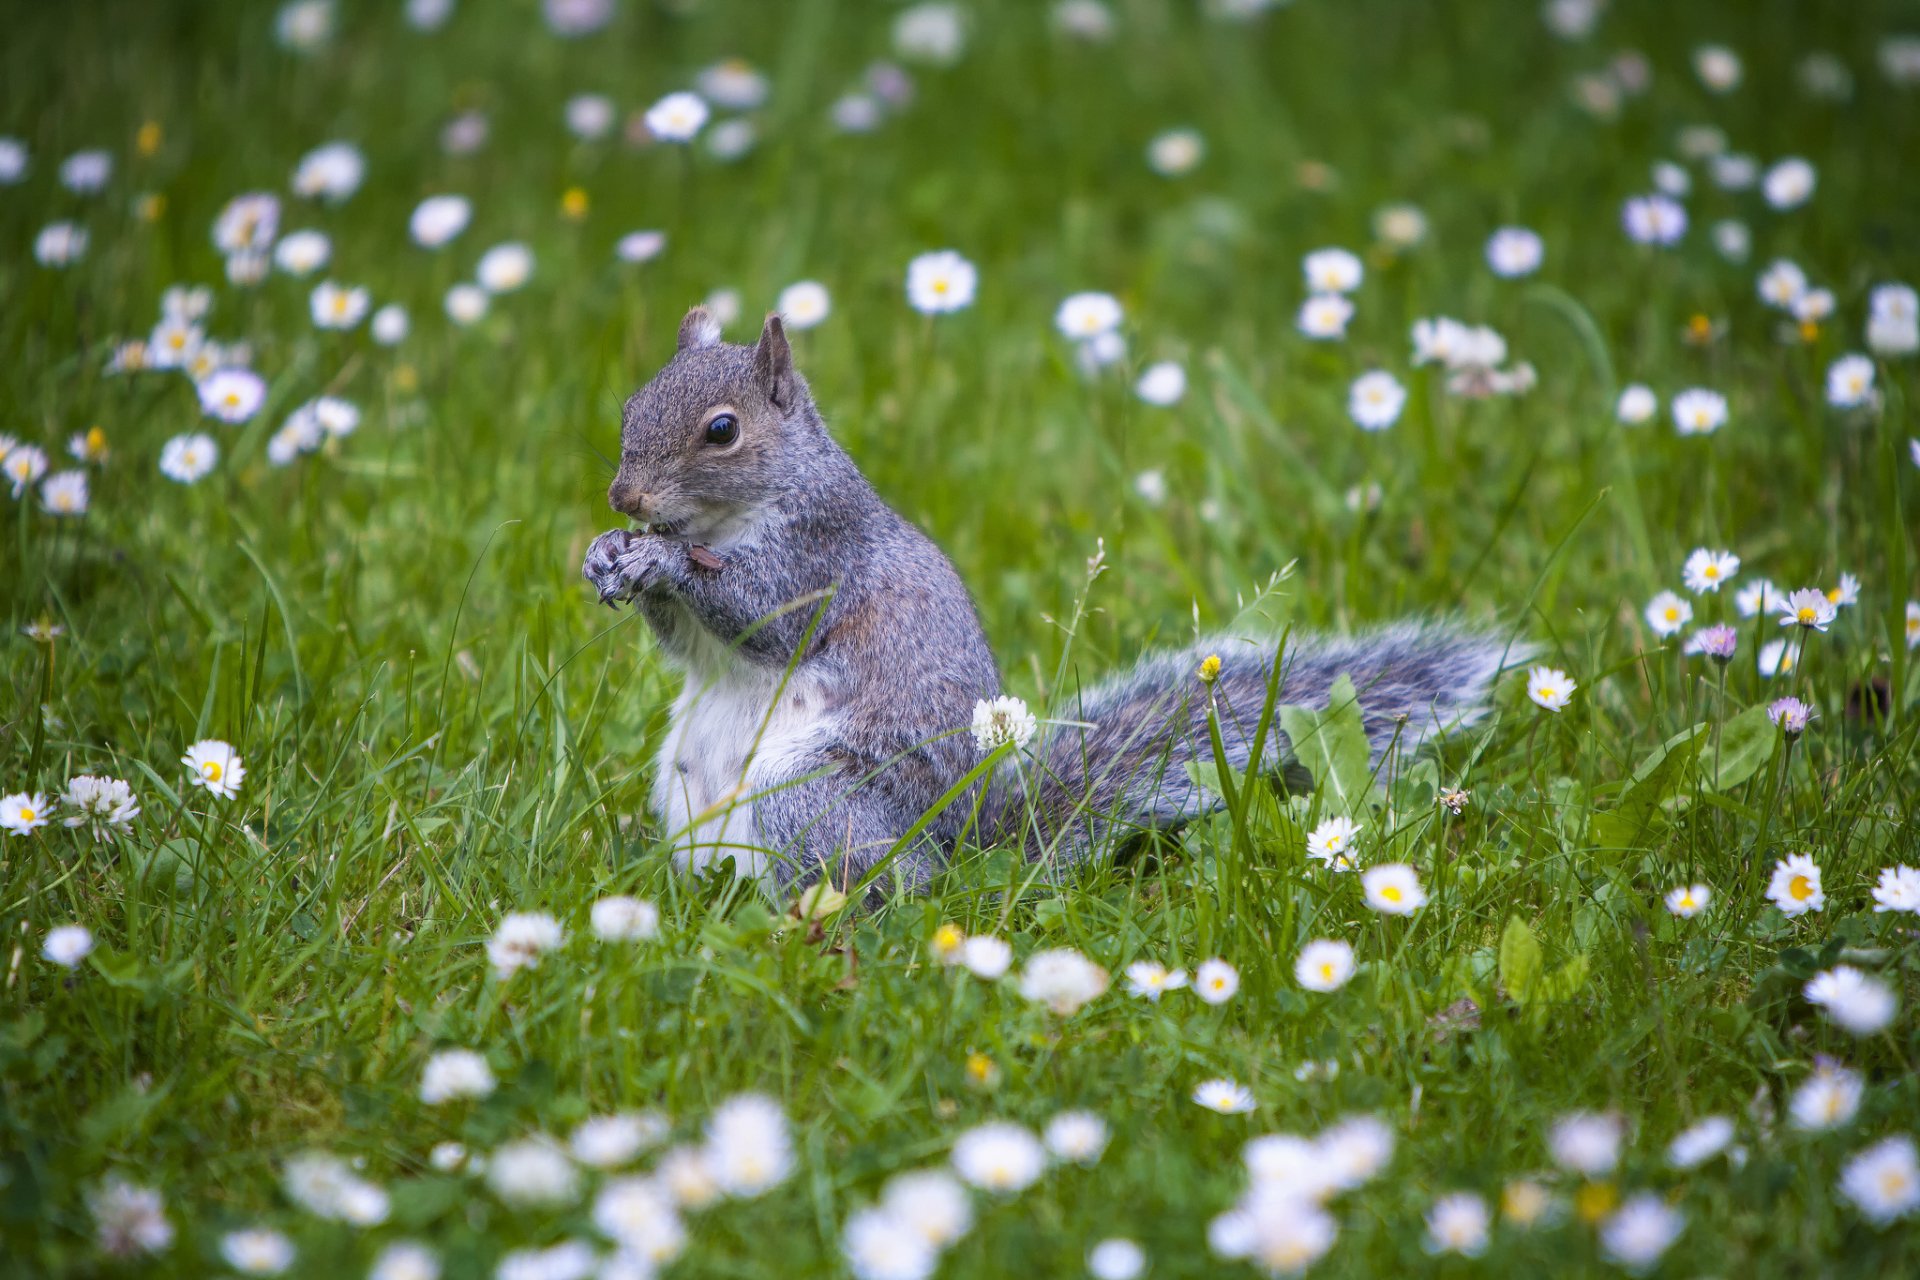 Squirrel HD Wallpaper